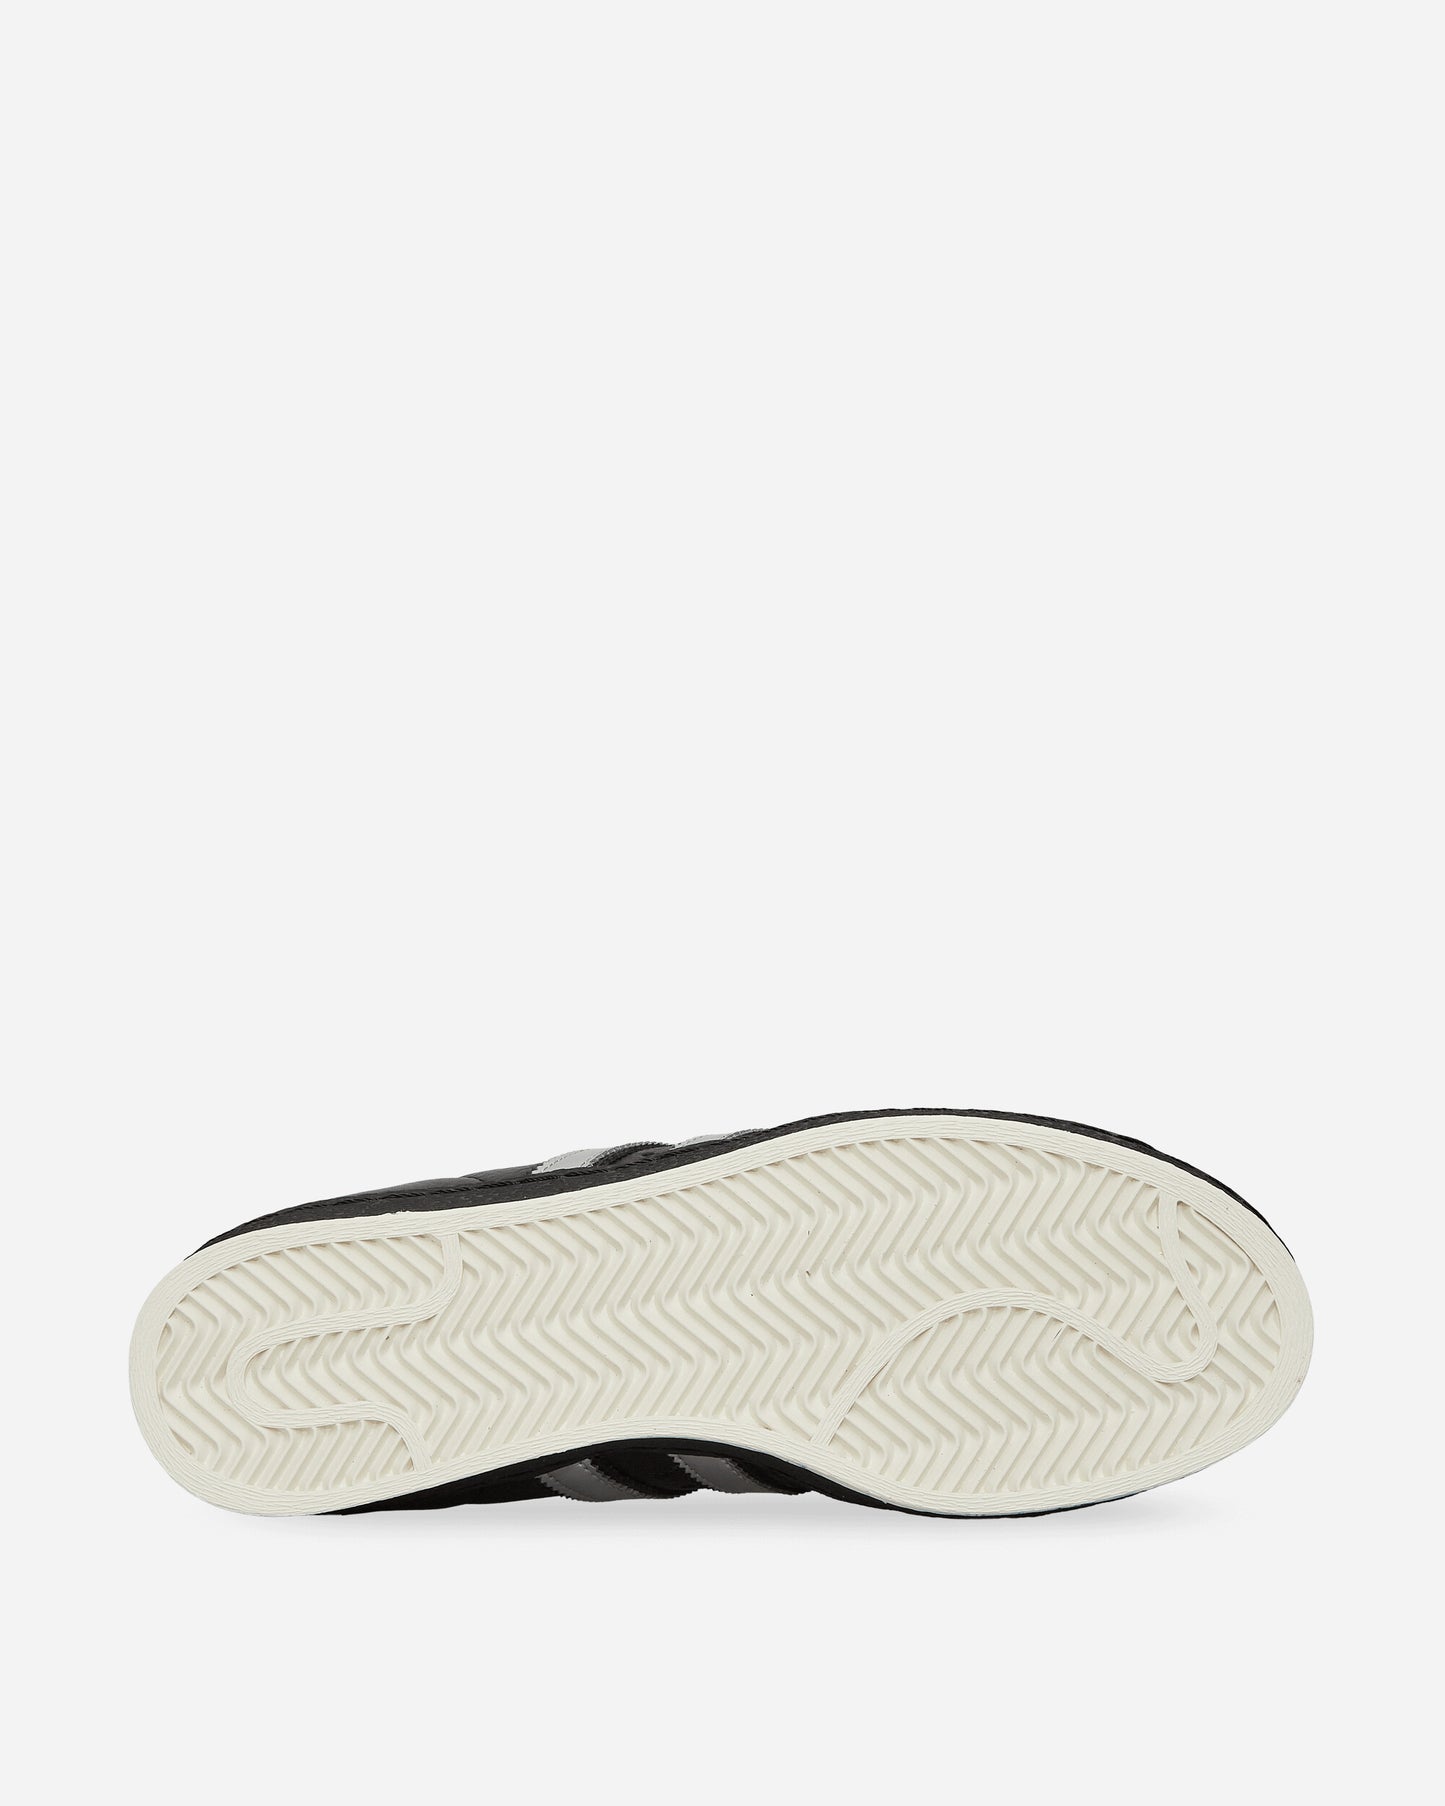 adidas Tmnt Shelltoe Shredder Core Black/Silver Met Sneakers Low IH7767